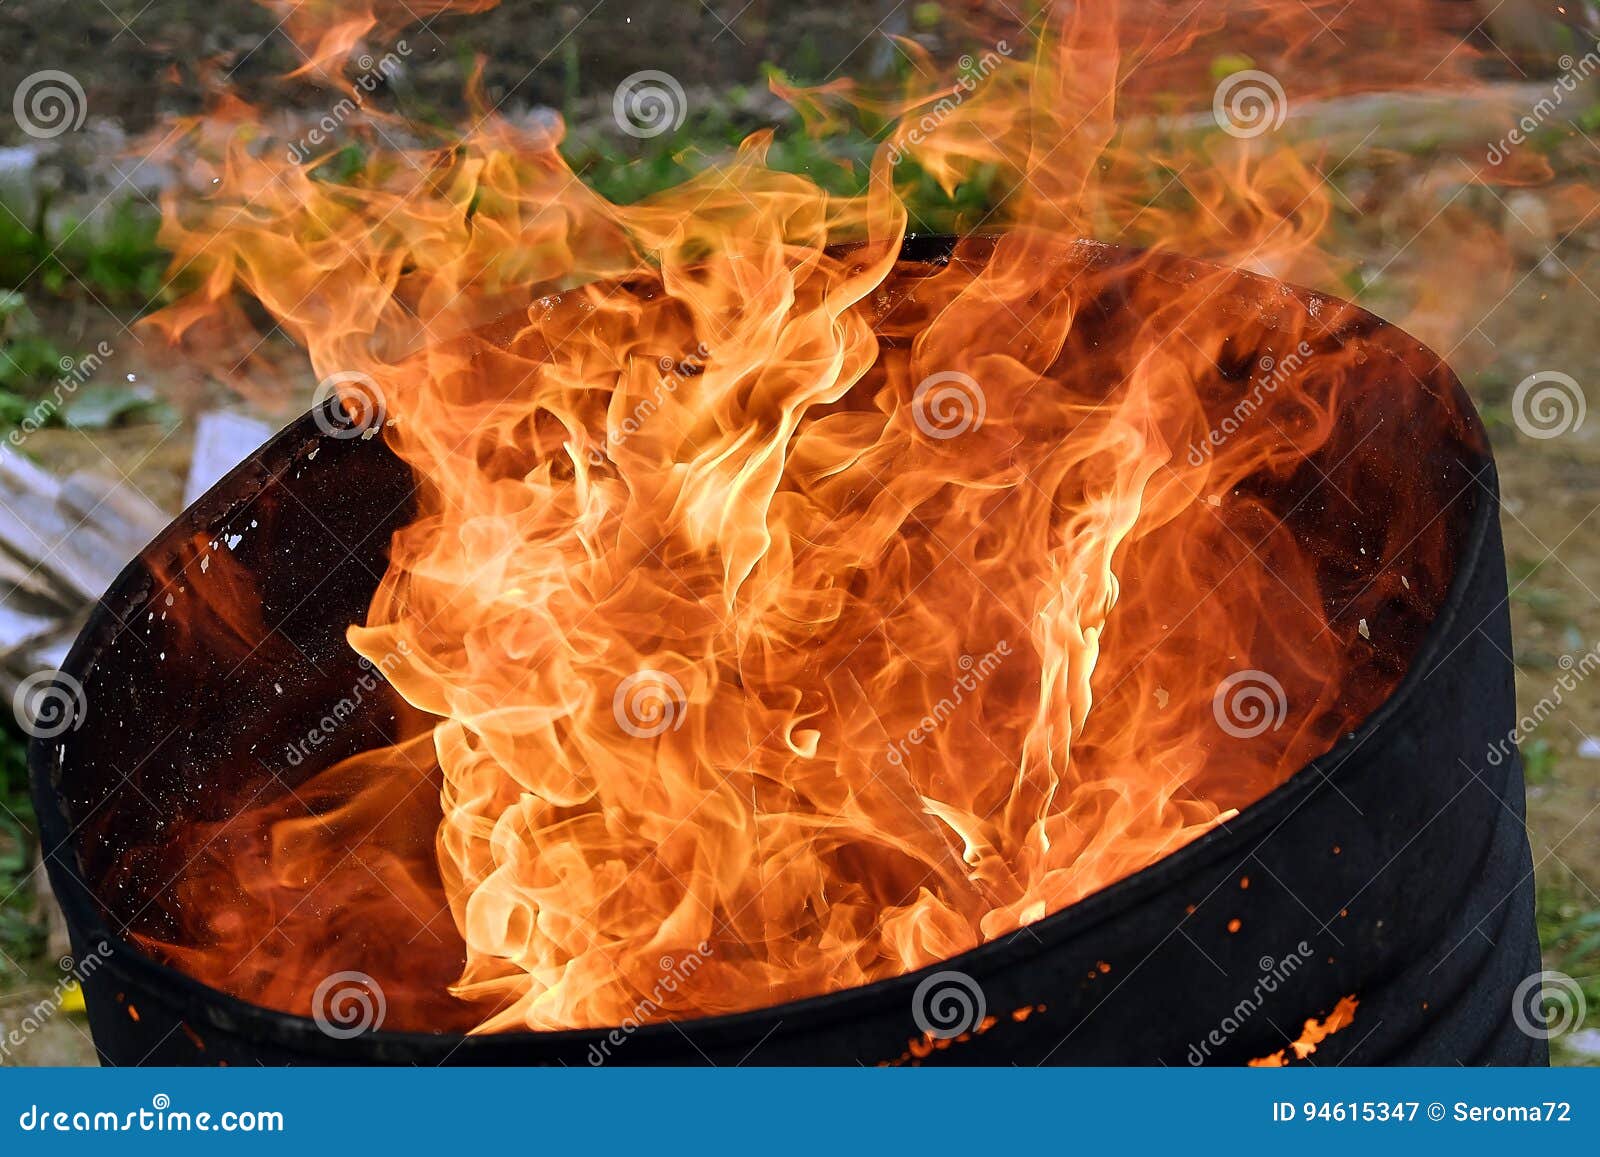 Le feu dans le baril photo stock. Image du incendiez - 70098140